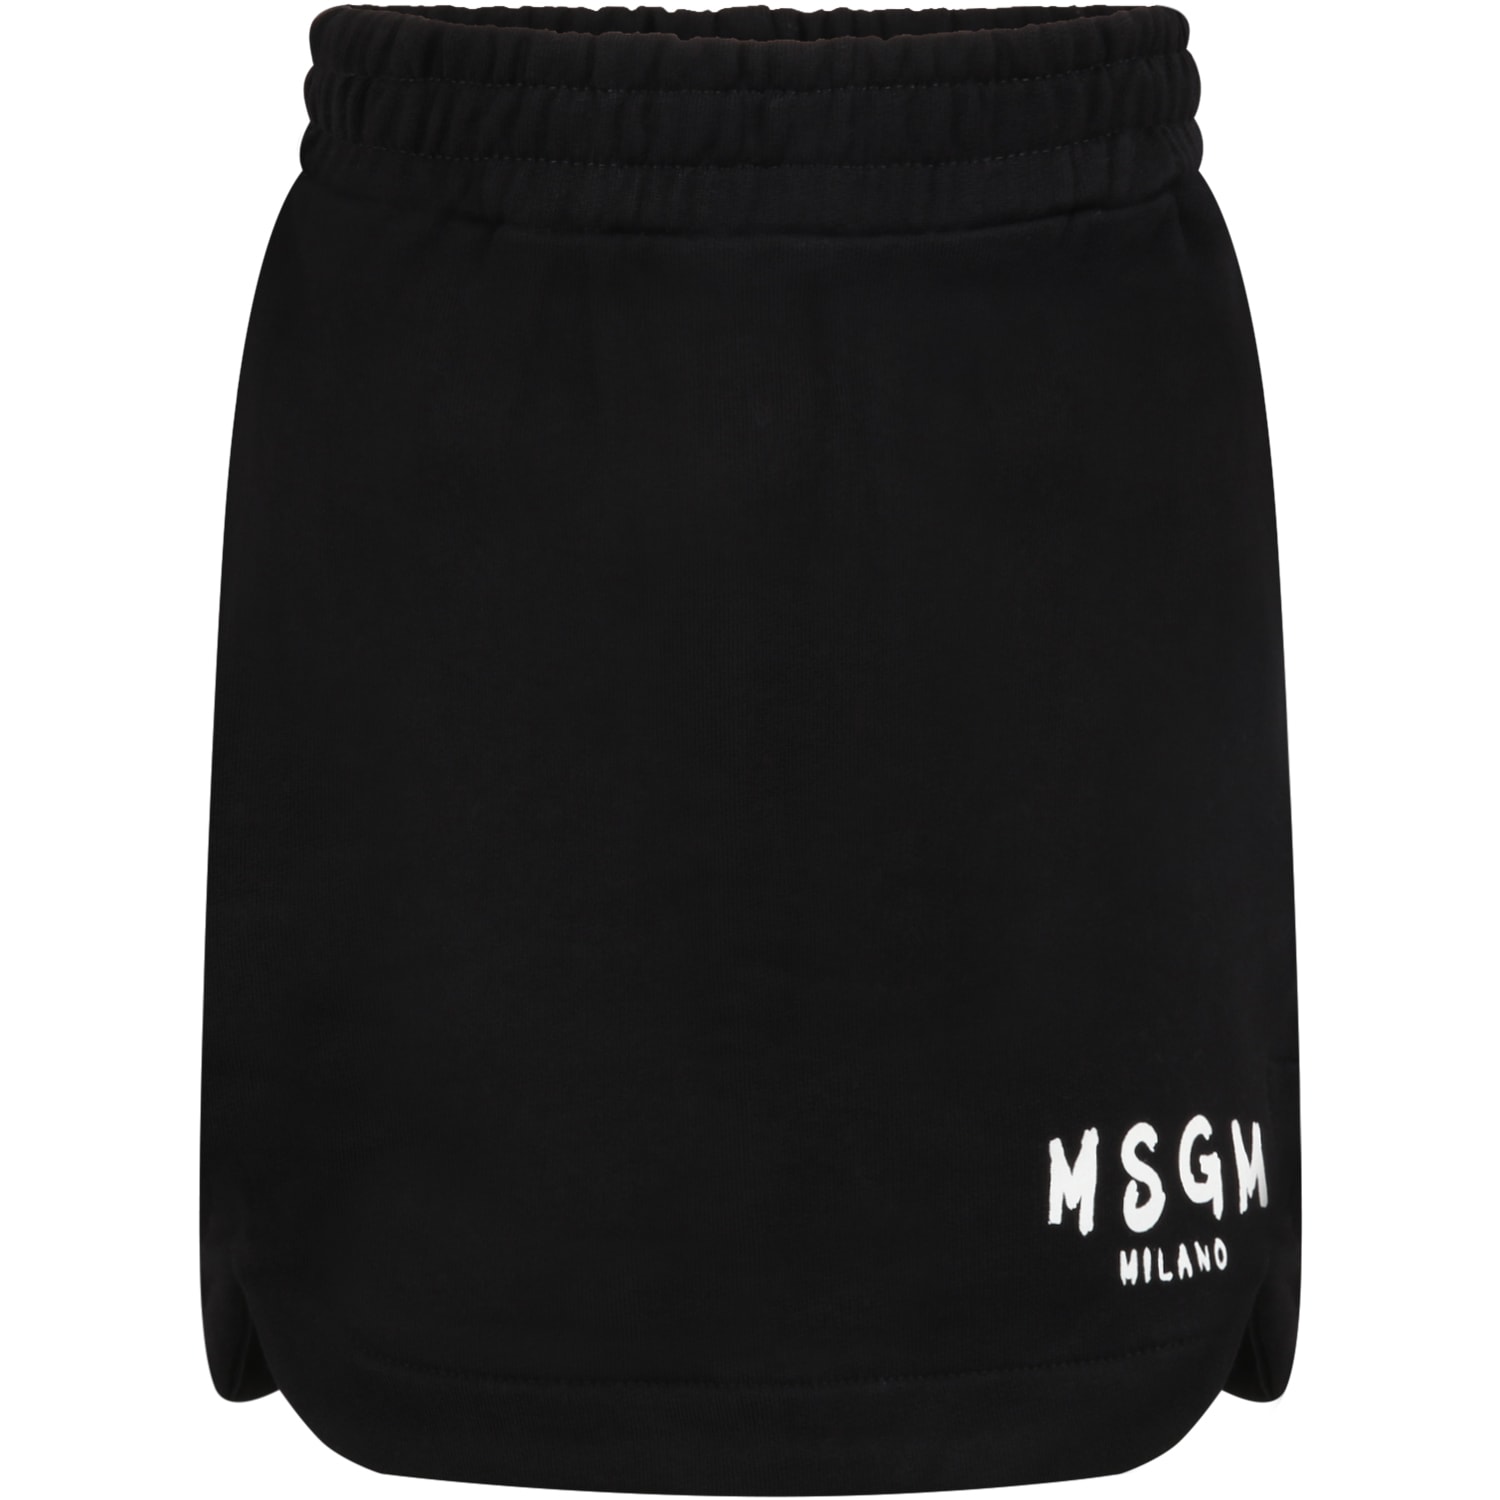 MSGM Black Skirt For Girl With White Logo